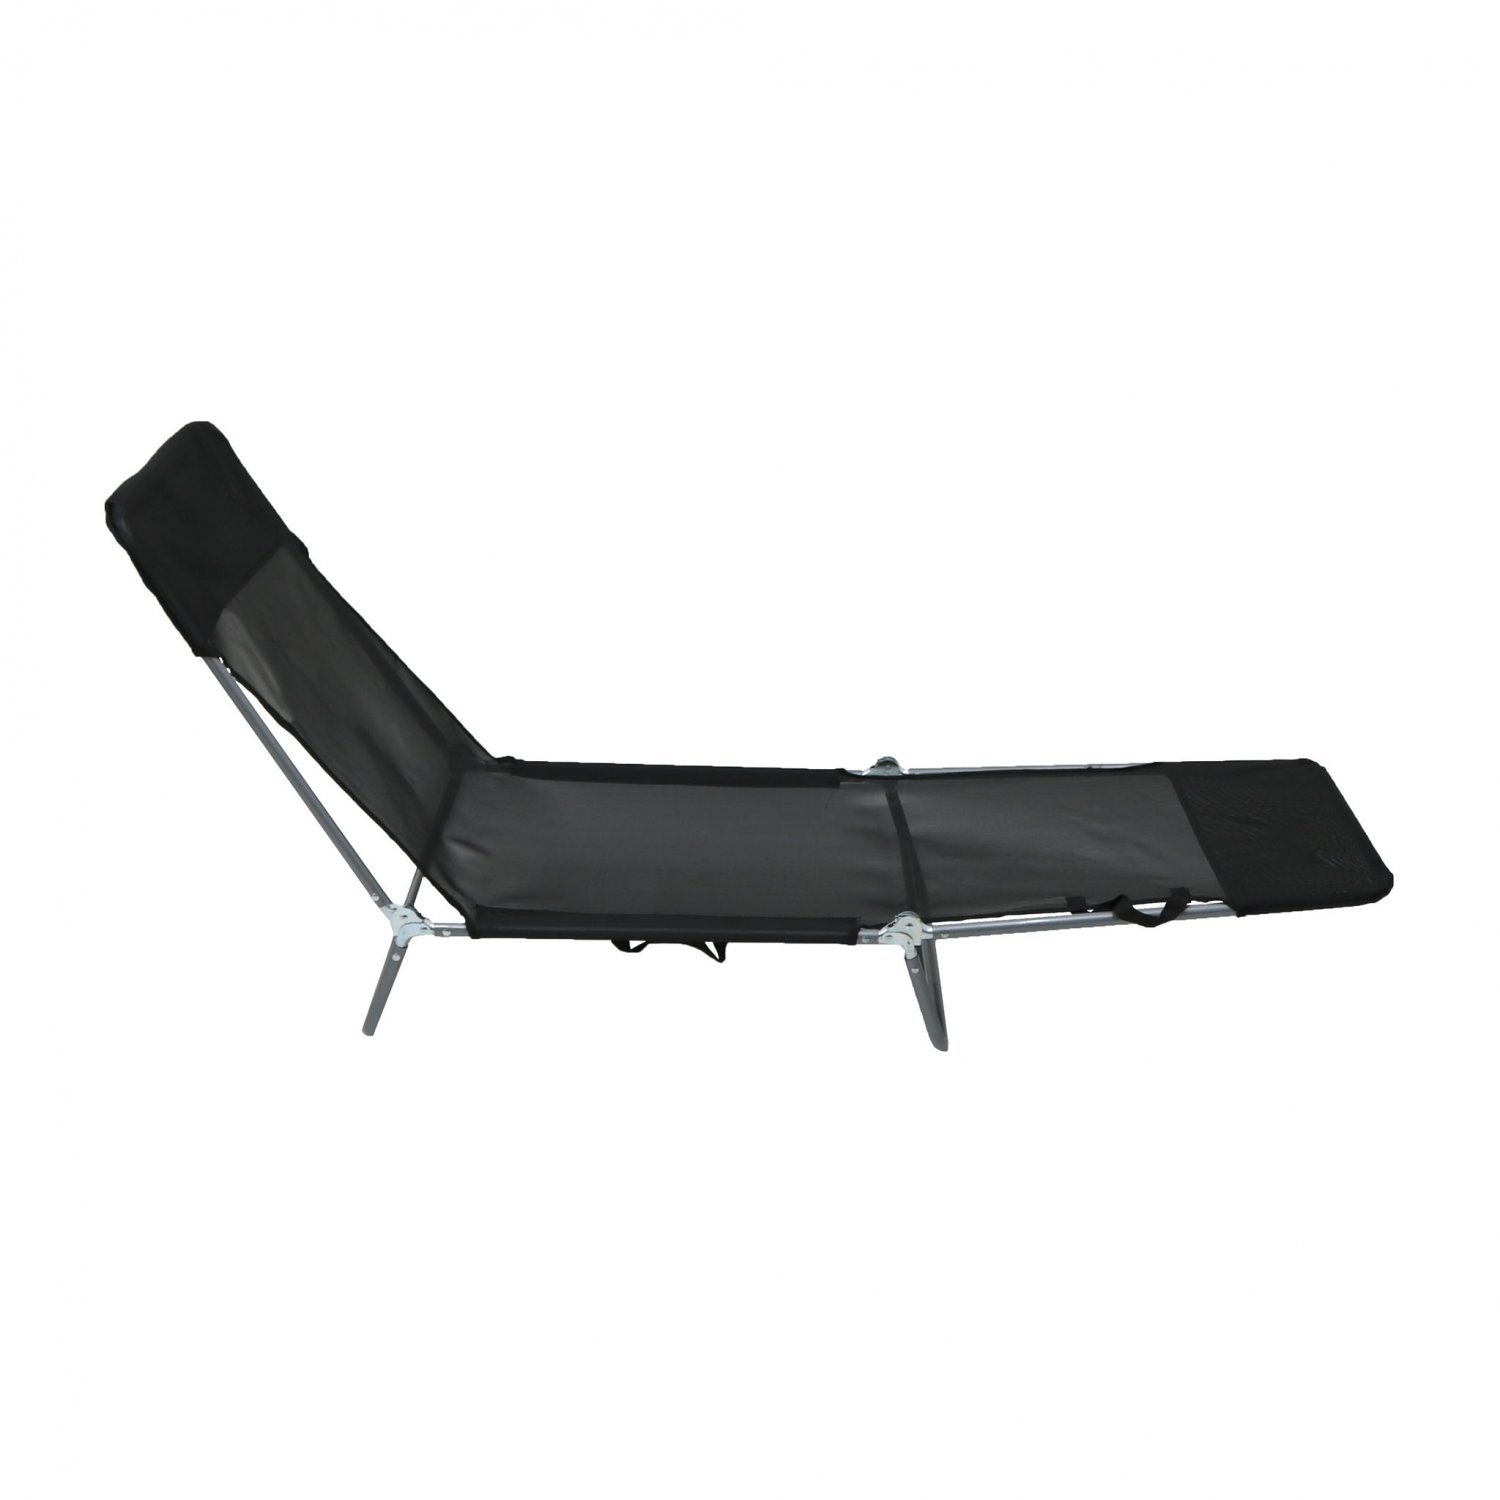 folding reclining sun lounger beach garden camping bed chair